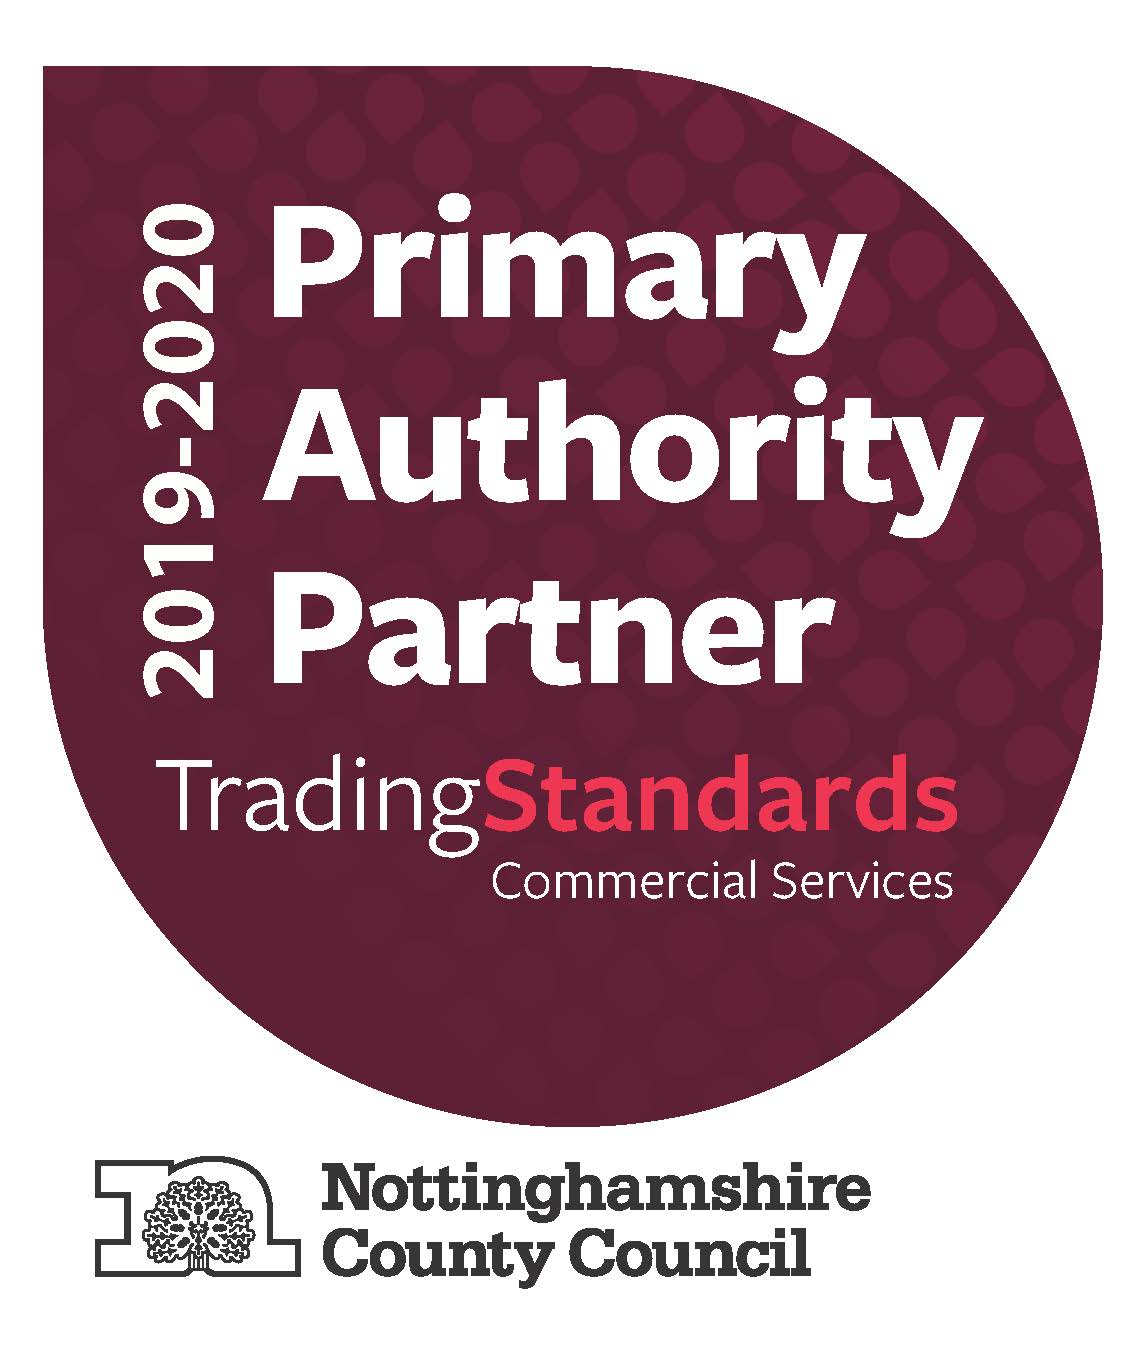 Primary Authority Partner